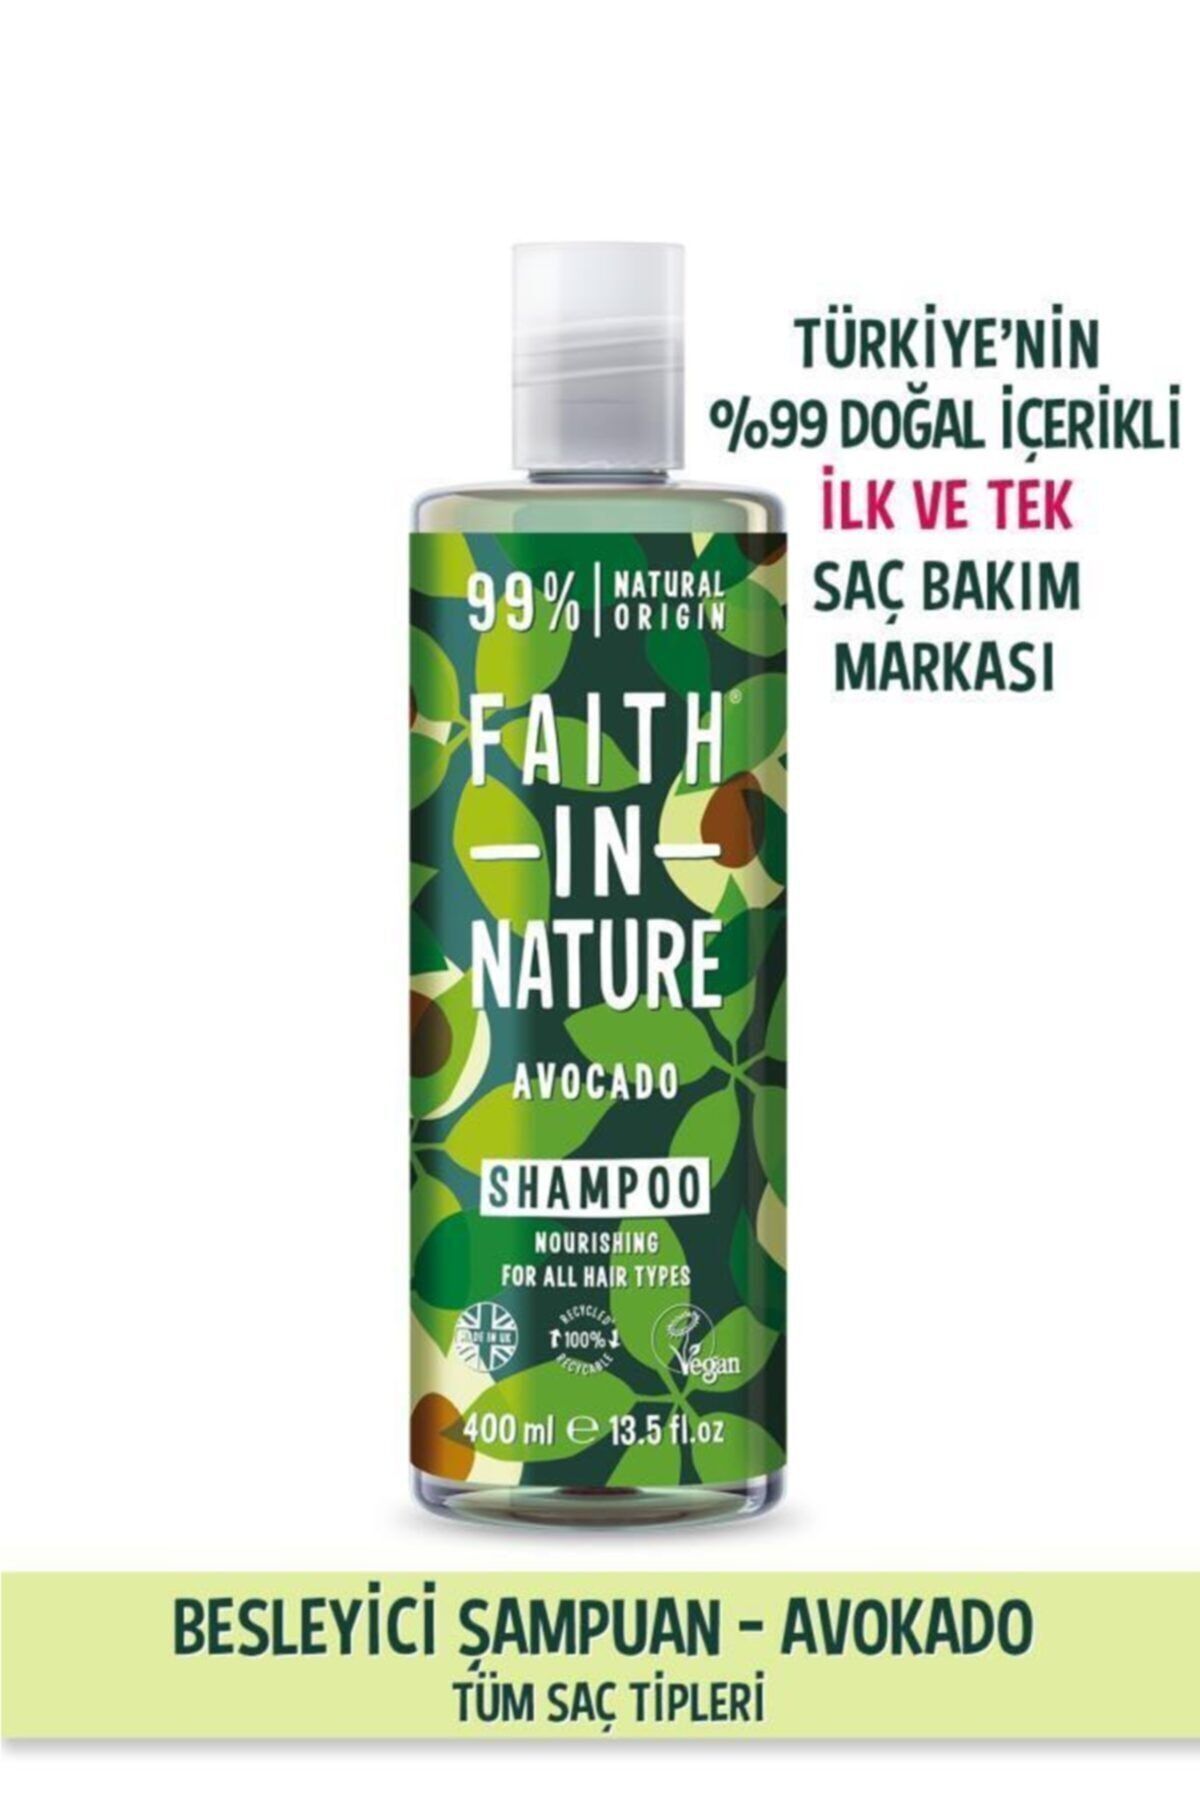 Faith In Nature %99 Doğal Besleyici Şampuan Avokado Tüm Saç Tipleri Için